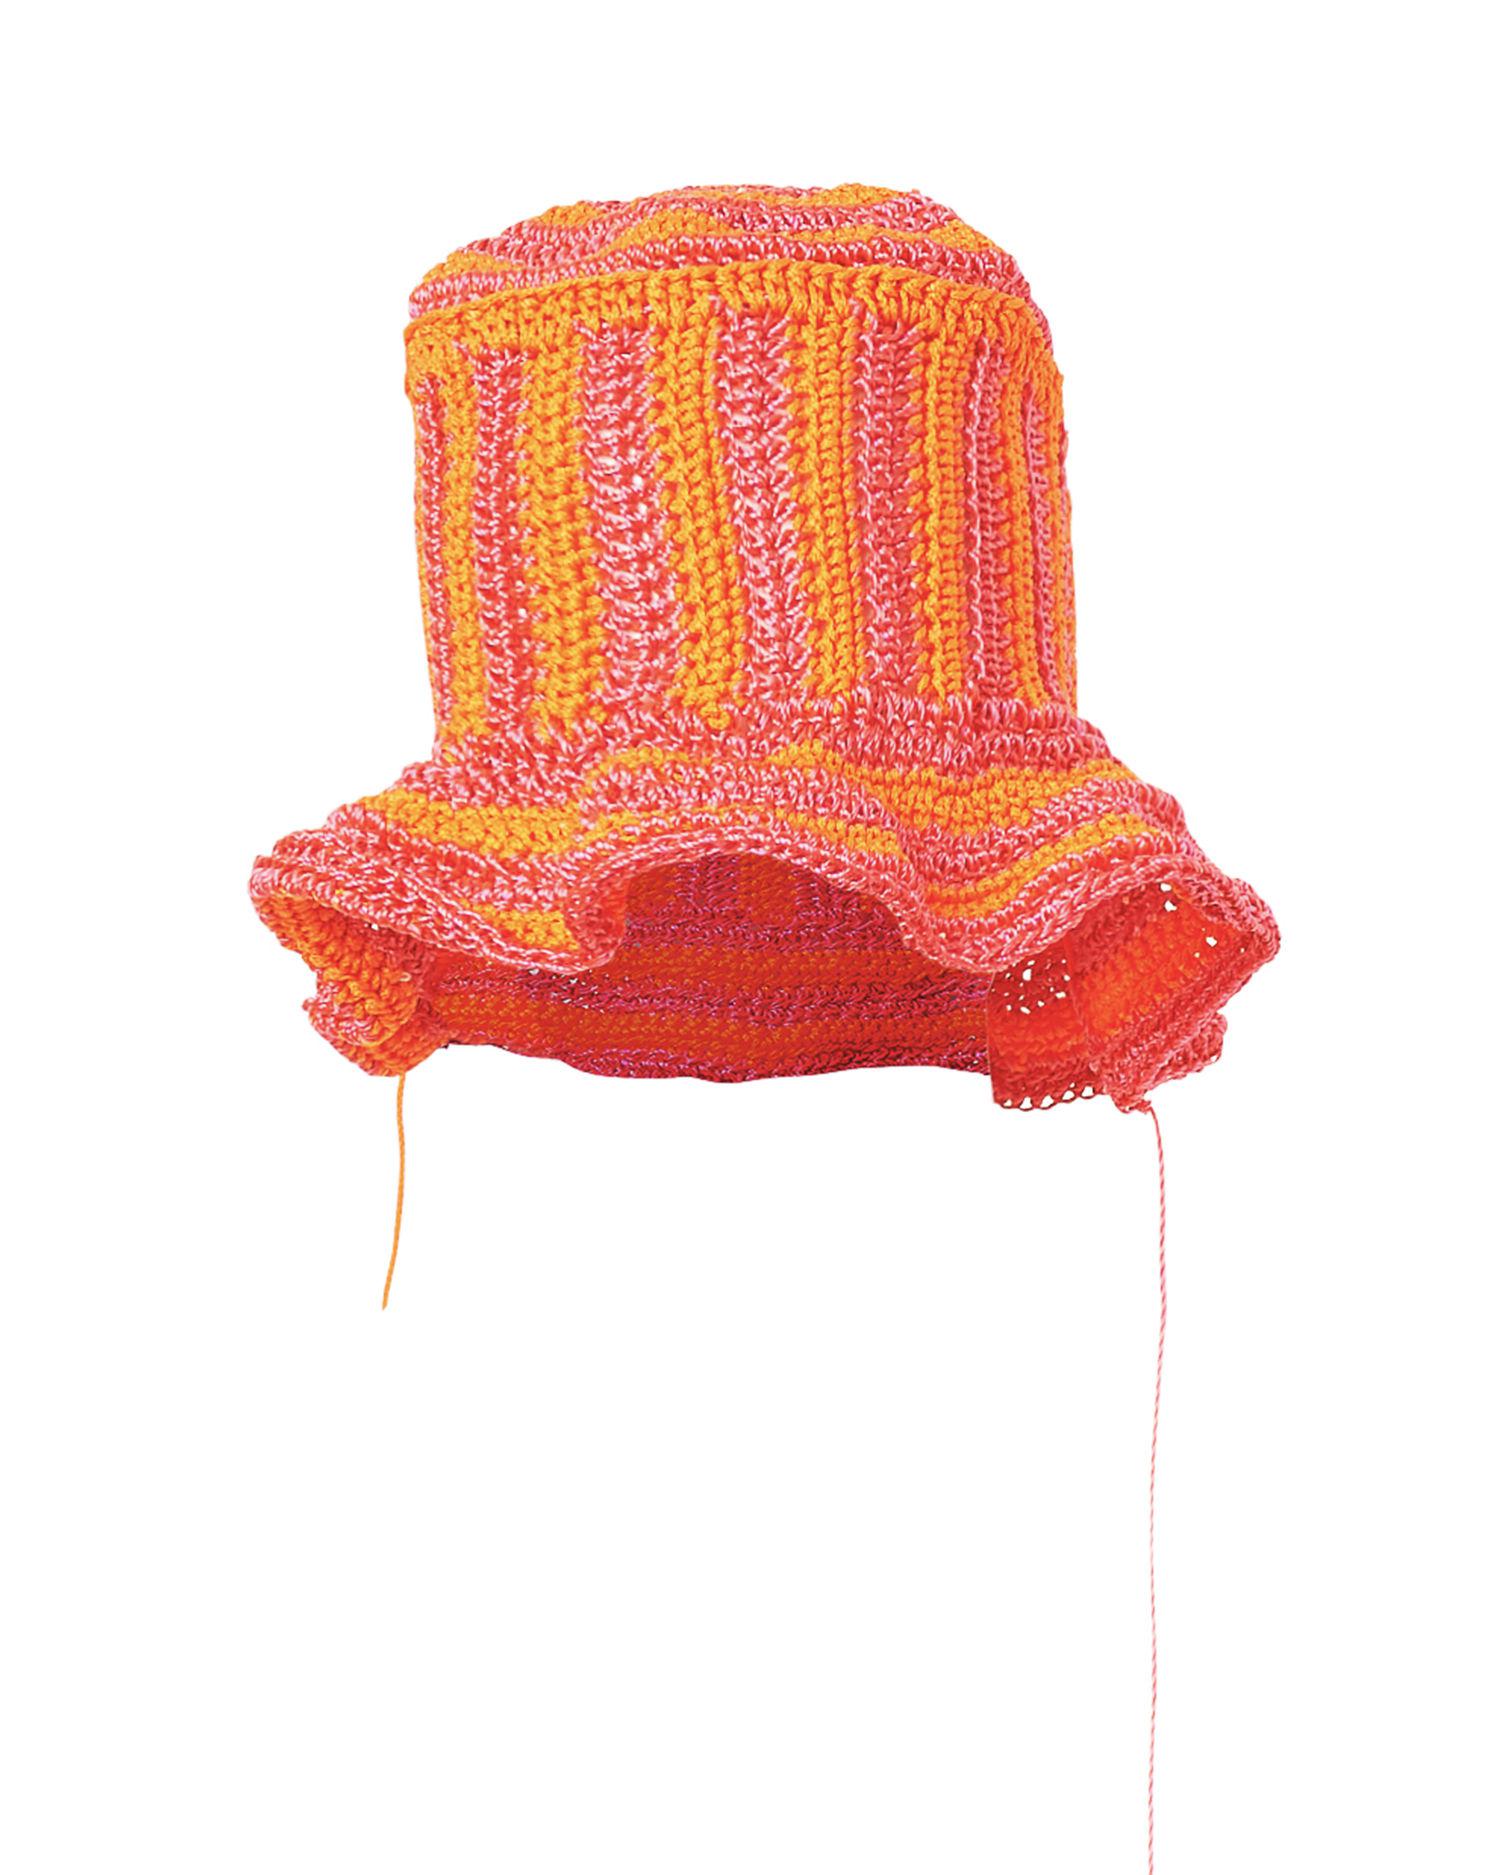 Crochet bucket hat by CHRISTIAN STONE